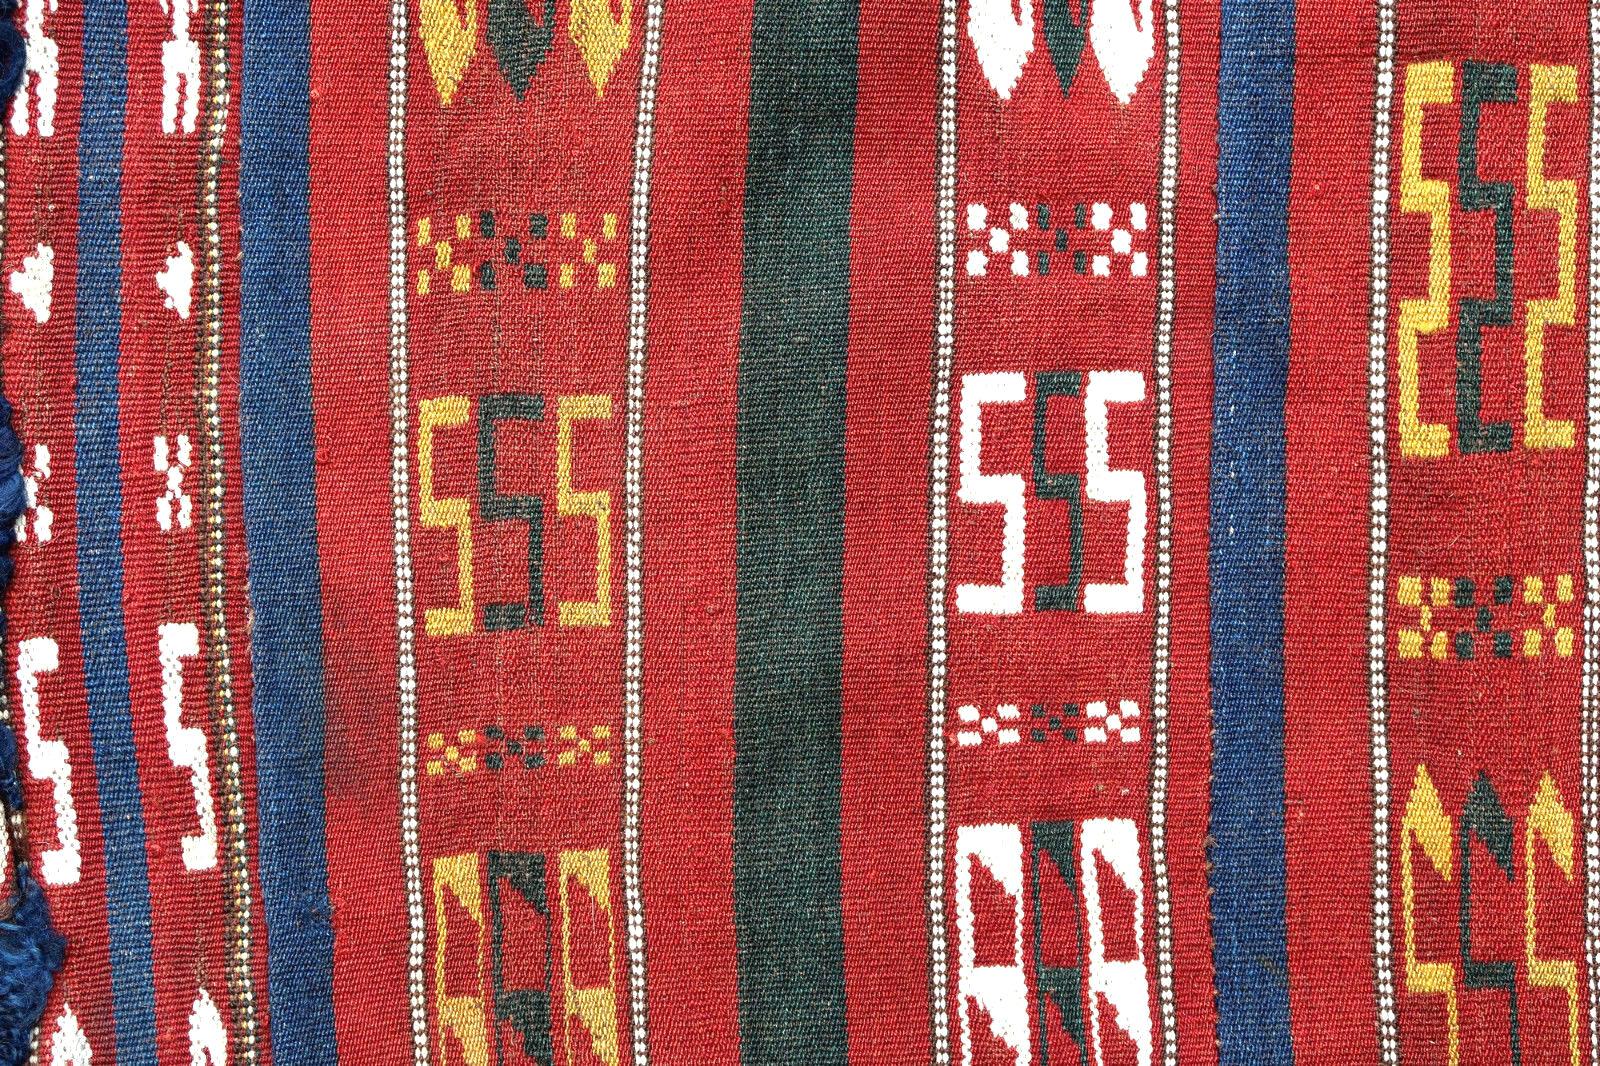 Antike Satteltasche aus der Türkei im Kelim-Stil. Der Teppich stammt vom Anfang des 20. Jahrhunderts und ist in gutem Originalzustand.

-zustand: original gut,

-um: 1900,

-größe: 3,5' x 4,6' (106cm x 140cm),

-material: